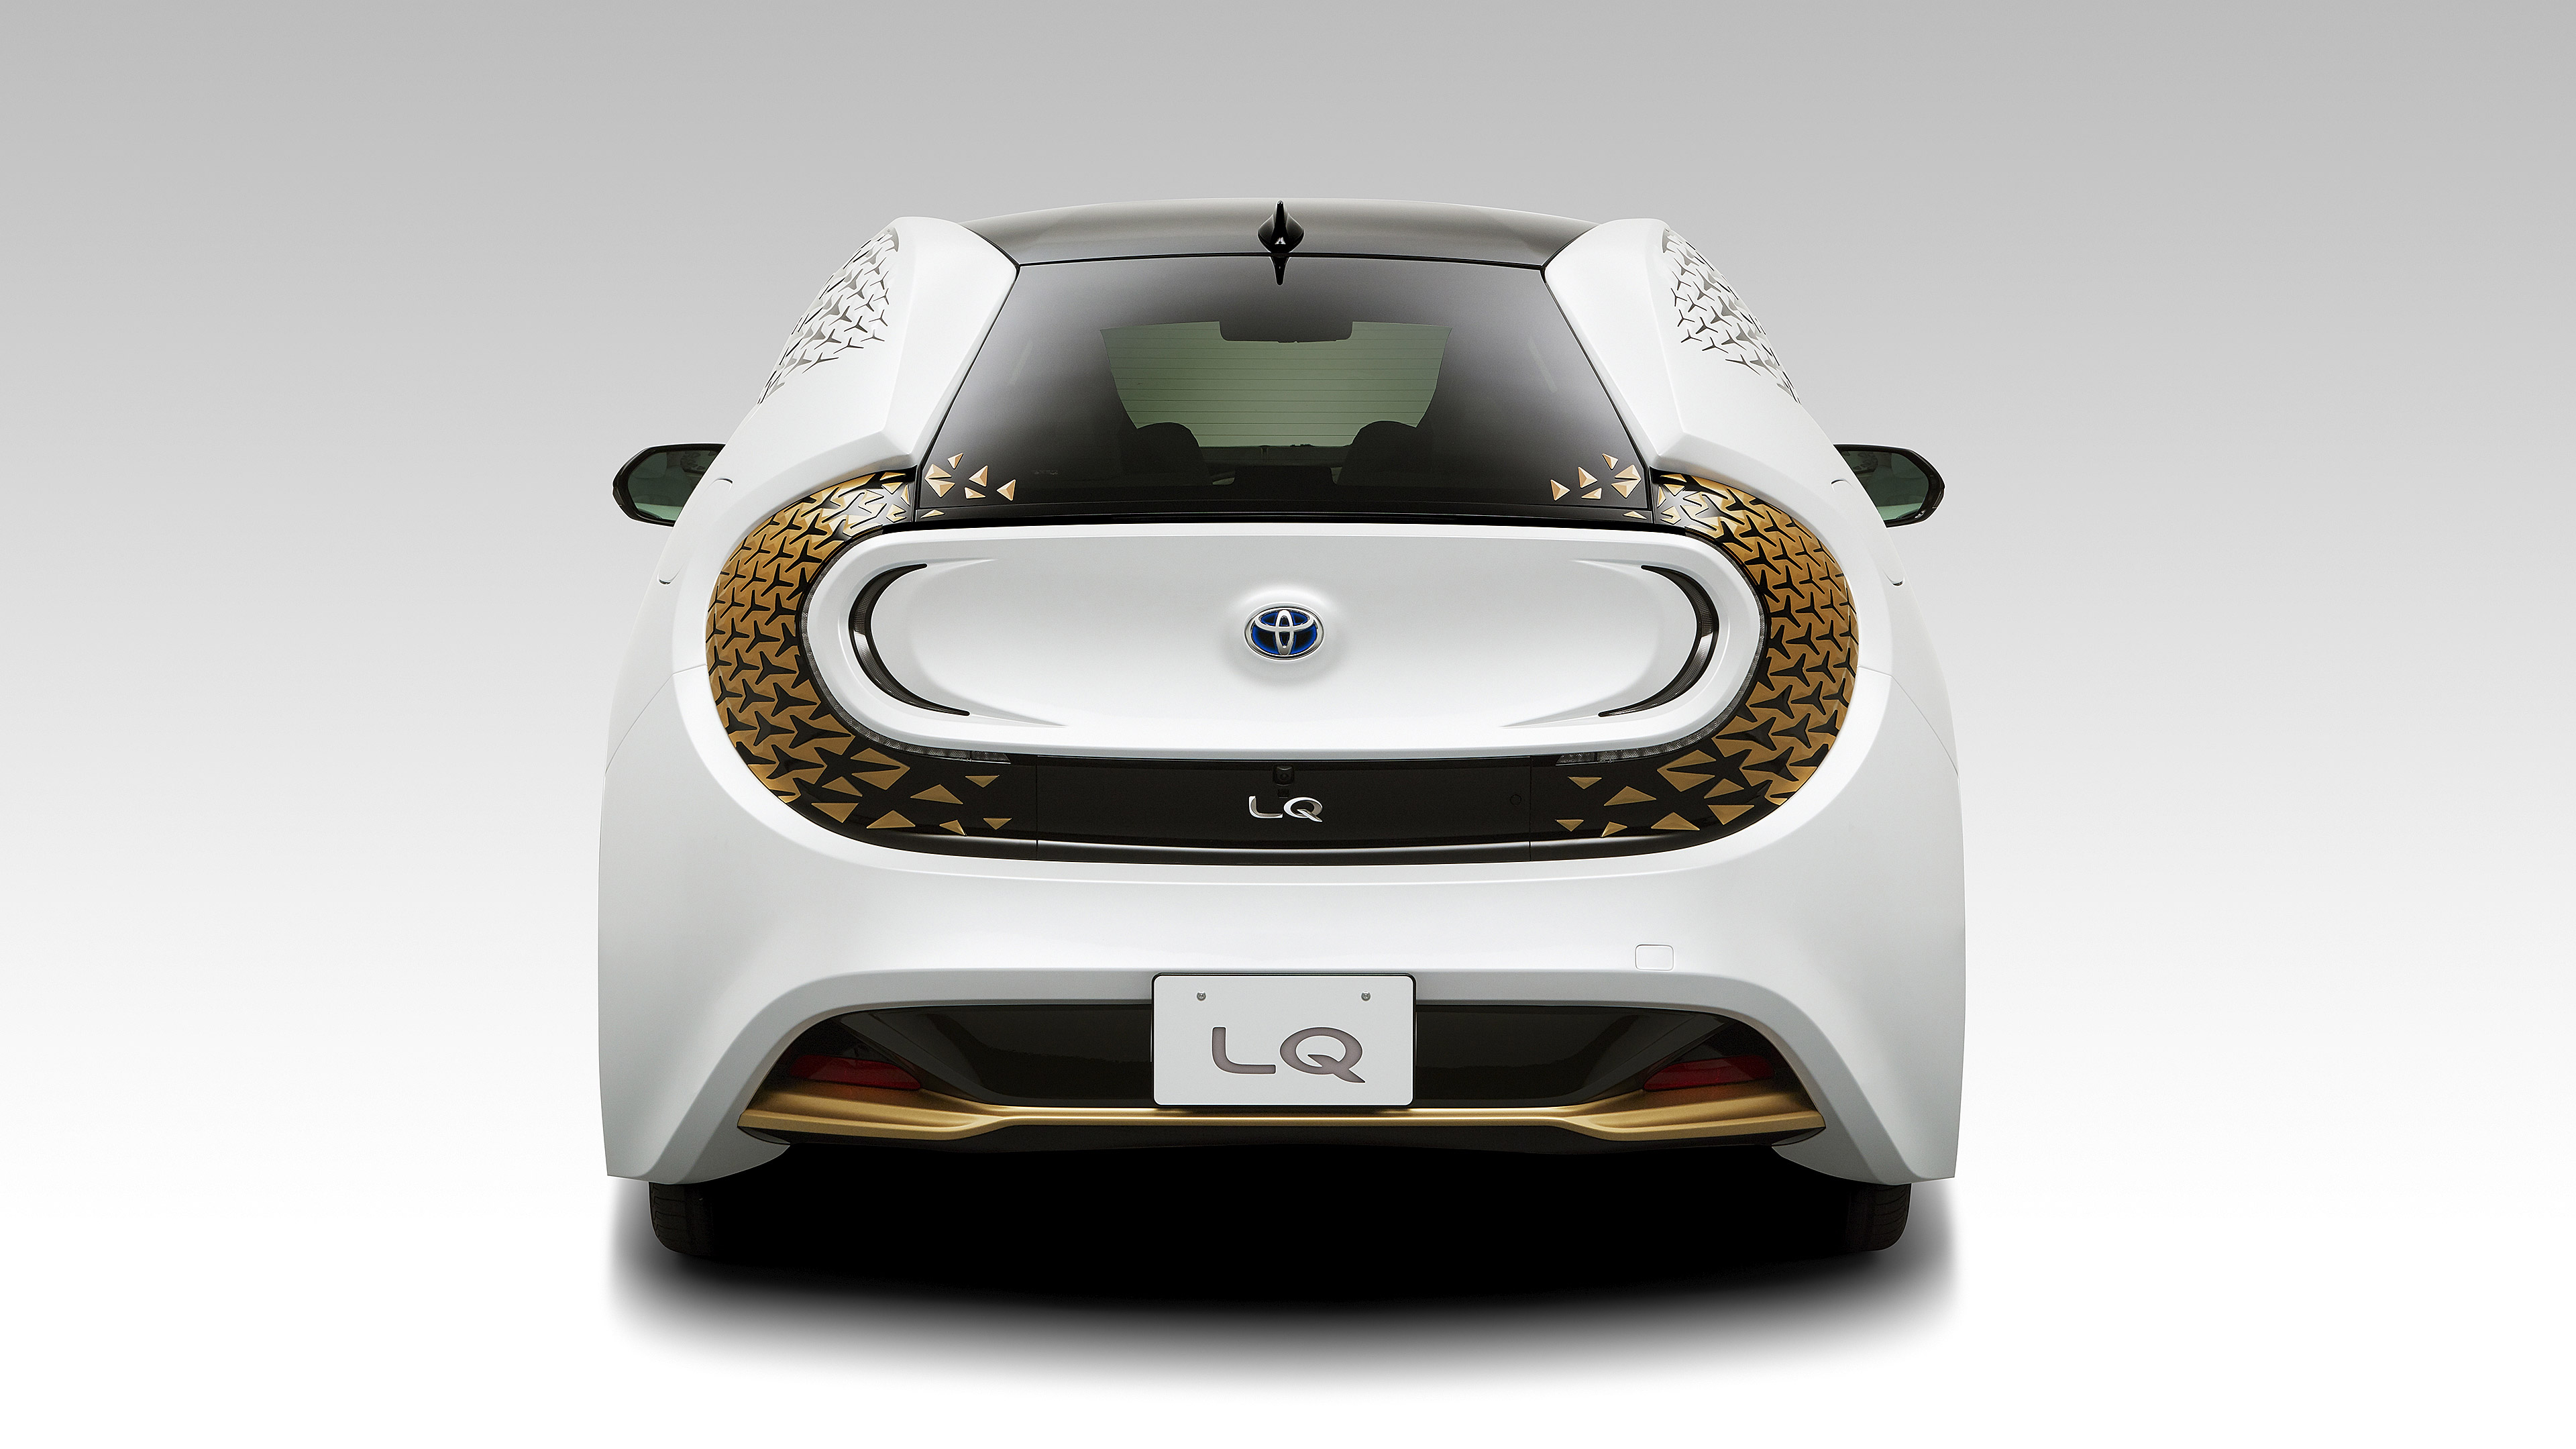  2019 Toyota LQ Concept Wallpaper.